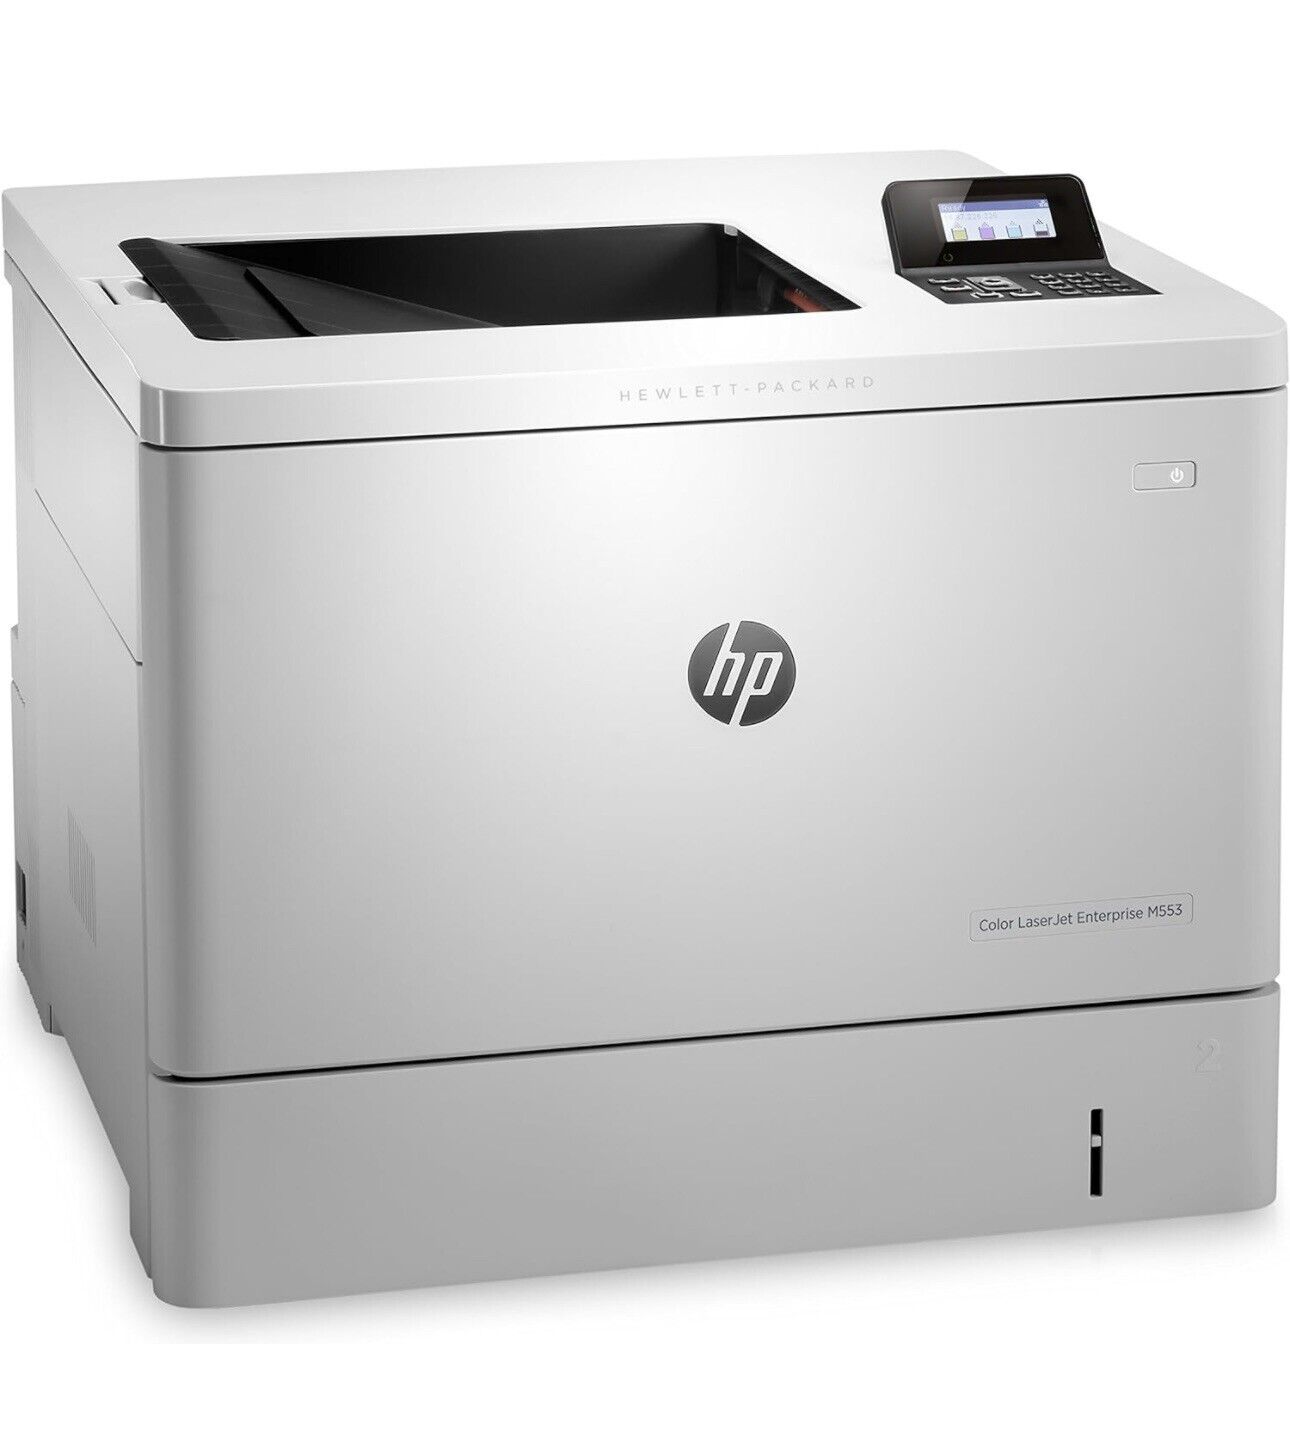 HP Color Laser Jet Enterprise M553dn Duplex Printer B5L25A - NEW